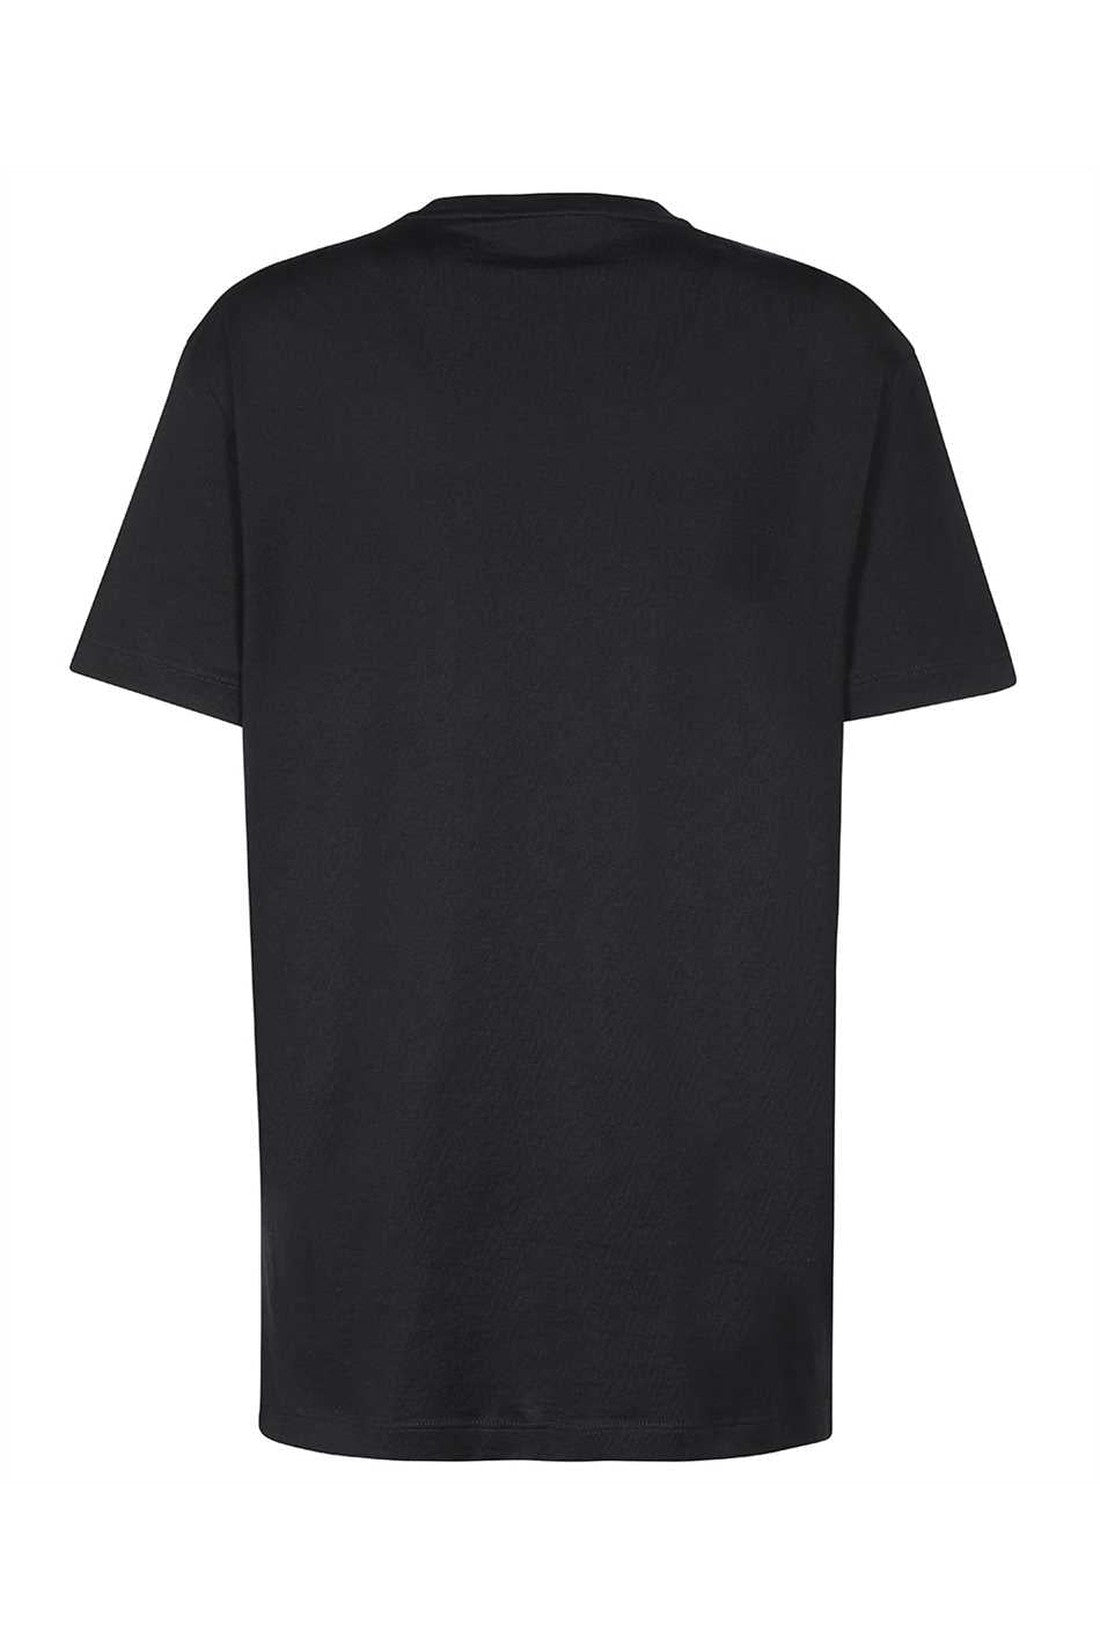 Logo cotton t-shirt-Versace-OUTLET-SALE-ARCHIVIST